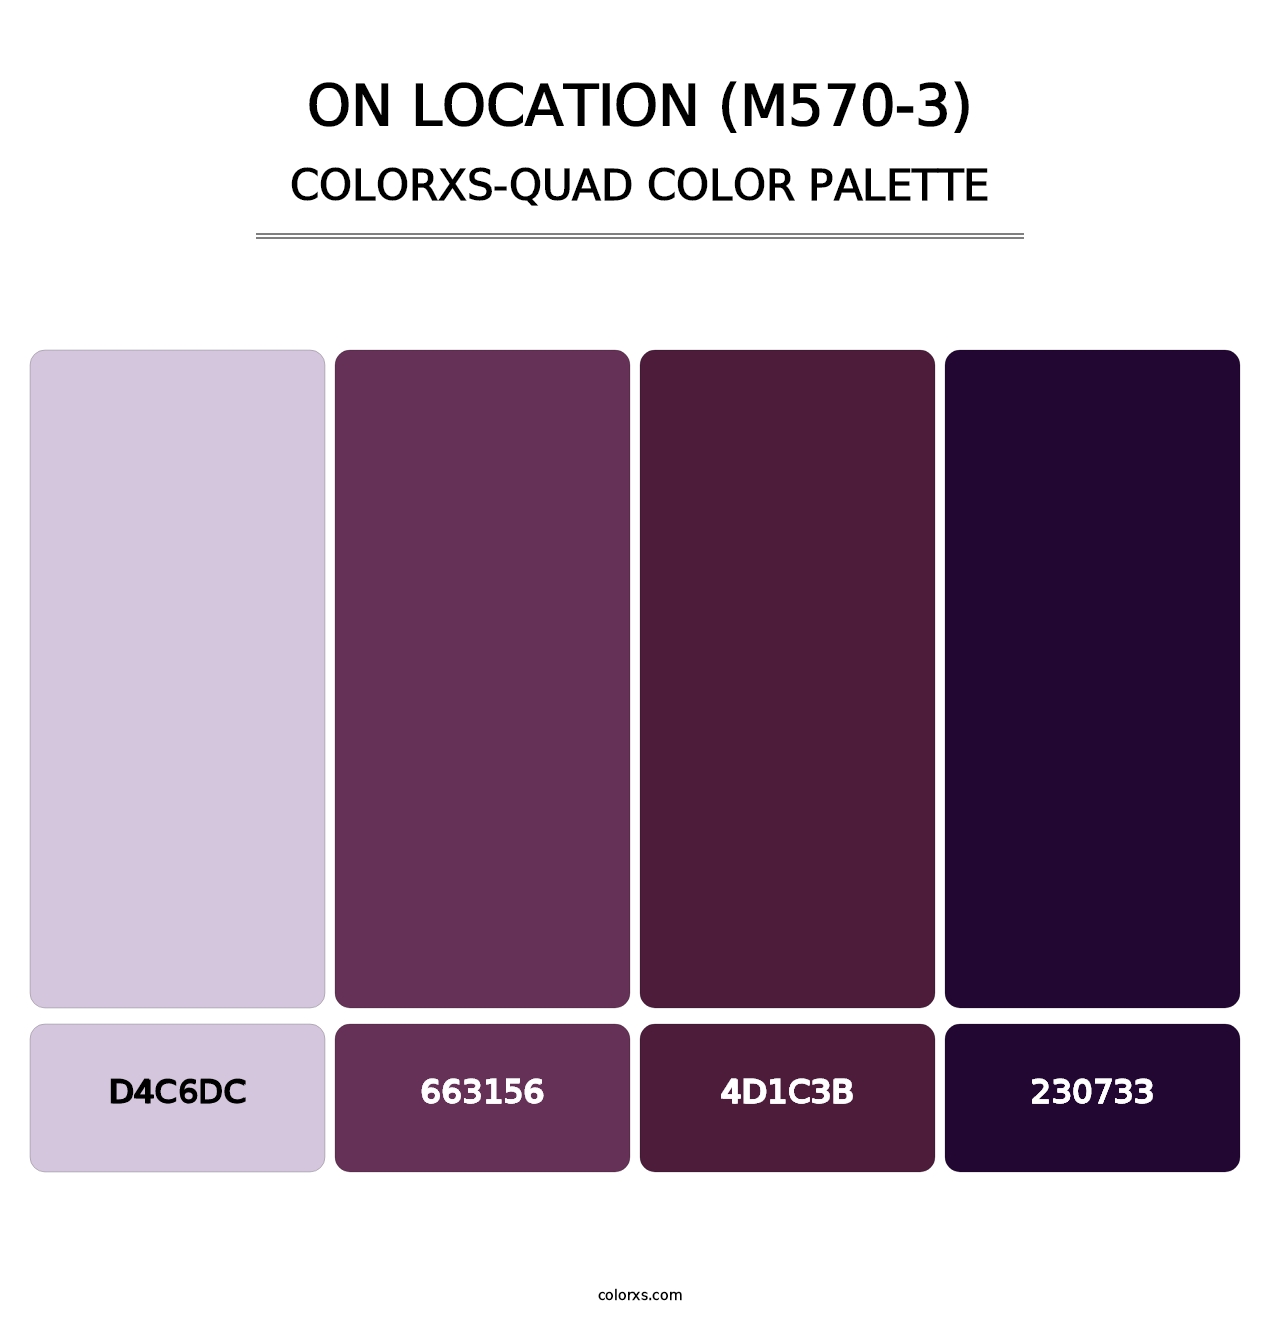 On Location (M570-3) - Colorxs Quad Palette